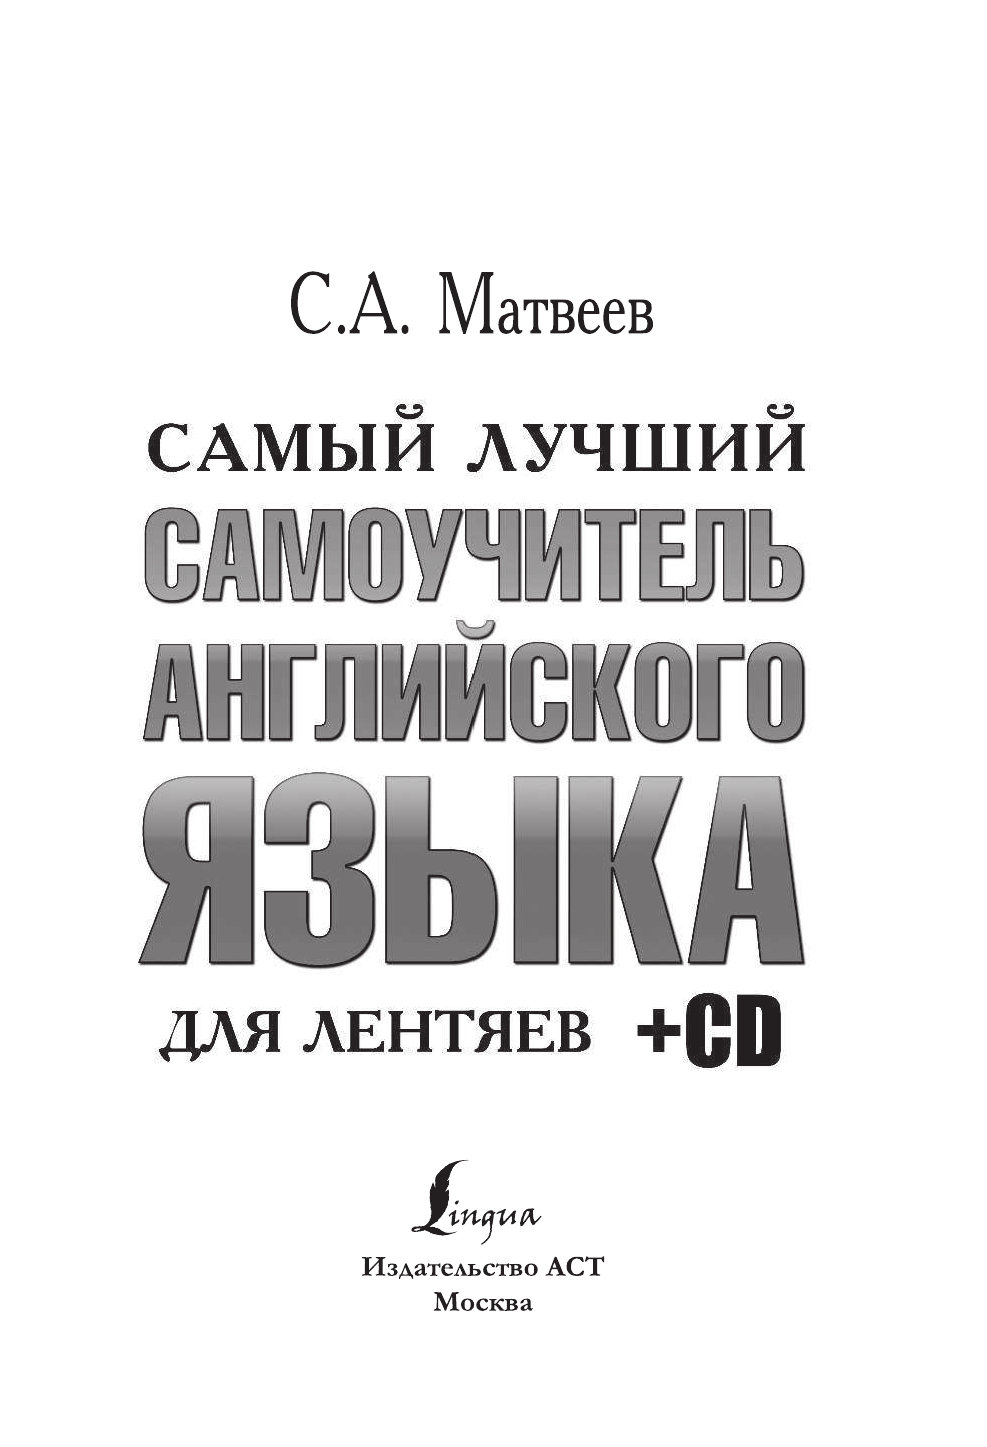 Матвеев Сергей Александрович Самый лучший самоучитель английского языка для лентяев + CD - страница 2